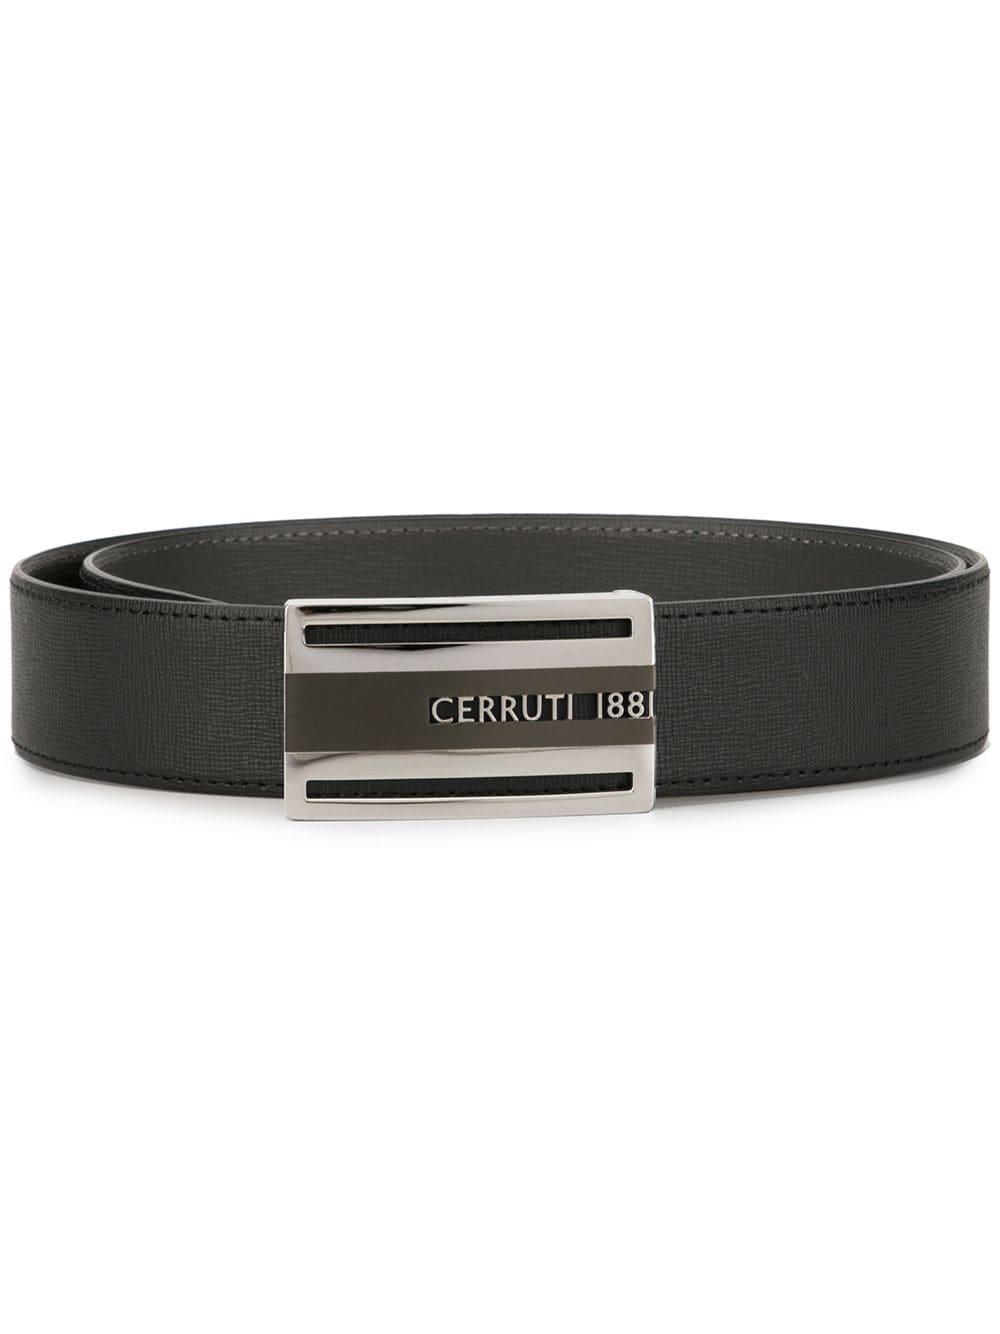 Cerruti 1881 Leather Logo Plaque Belt in Black for Men - Lyst